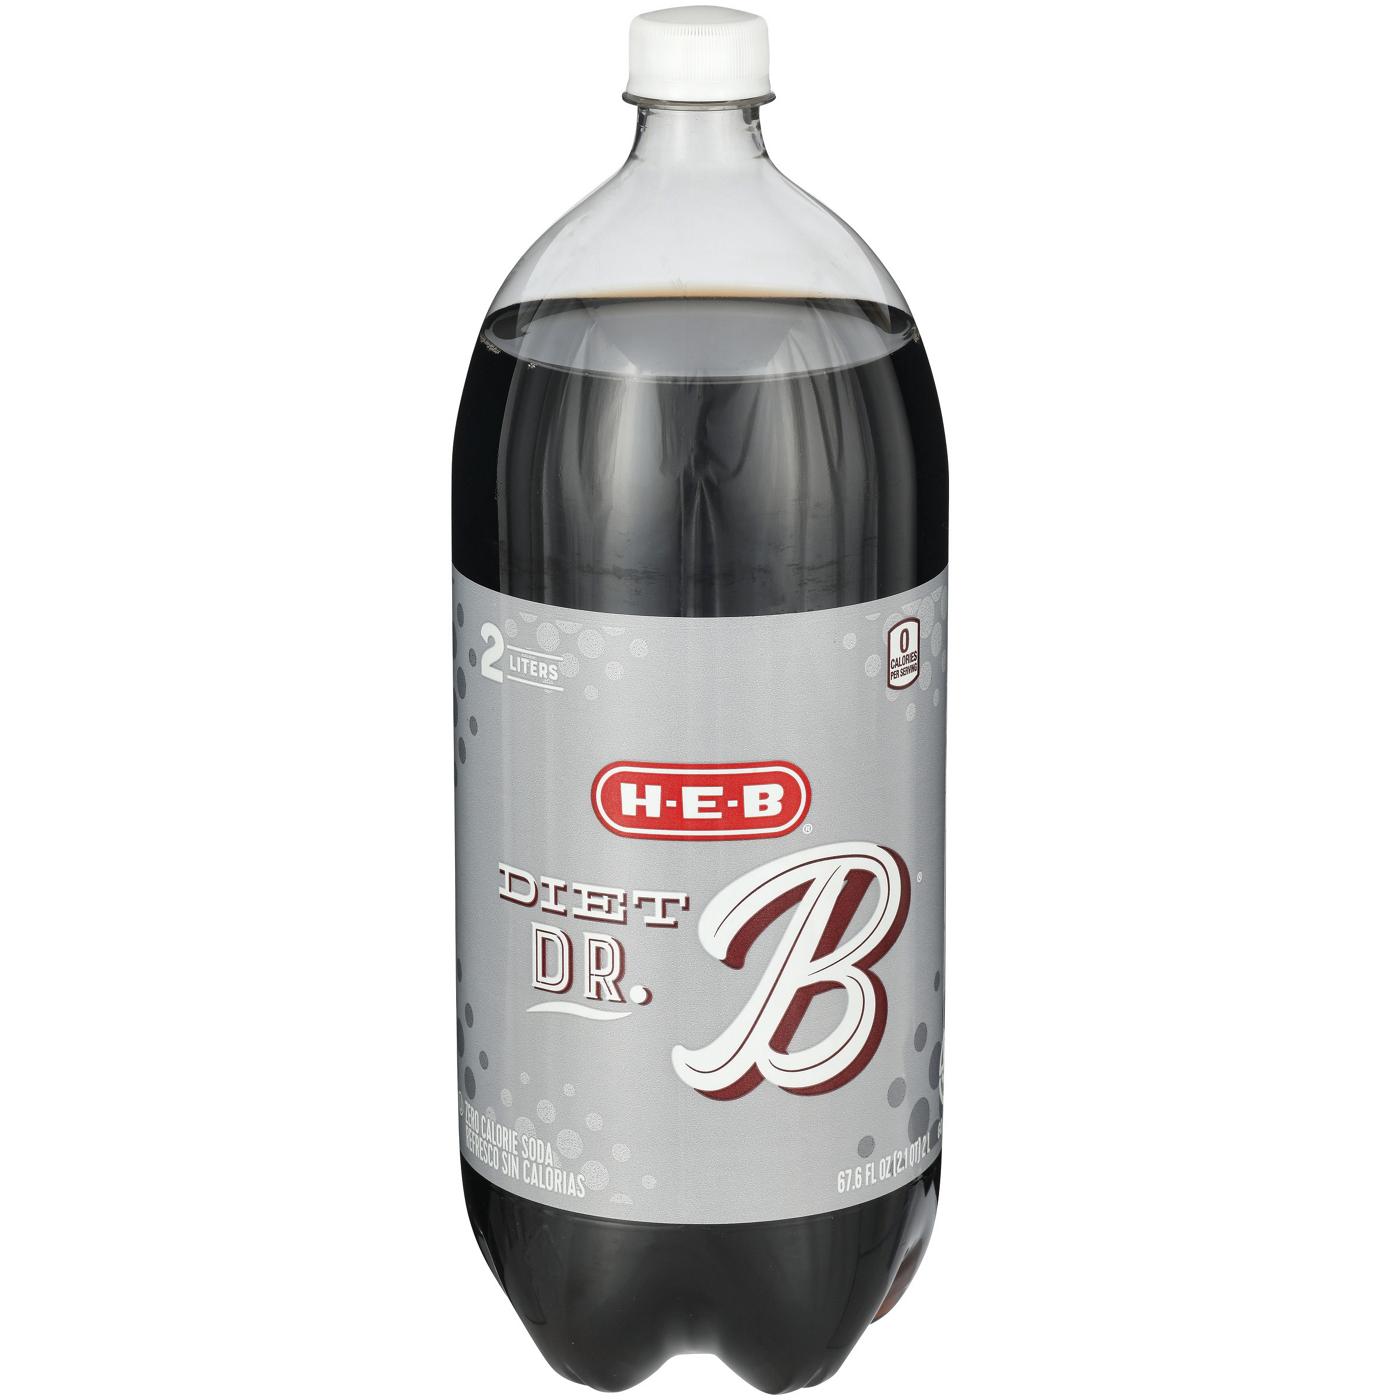 H-E-B Diet Dr. B Soda; image 1 of 2